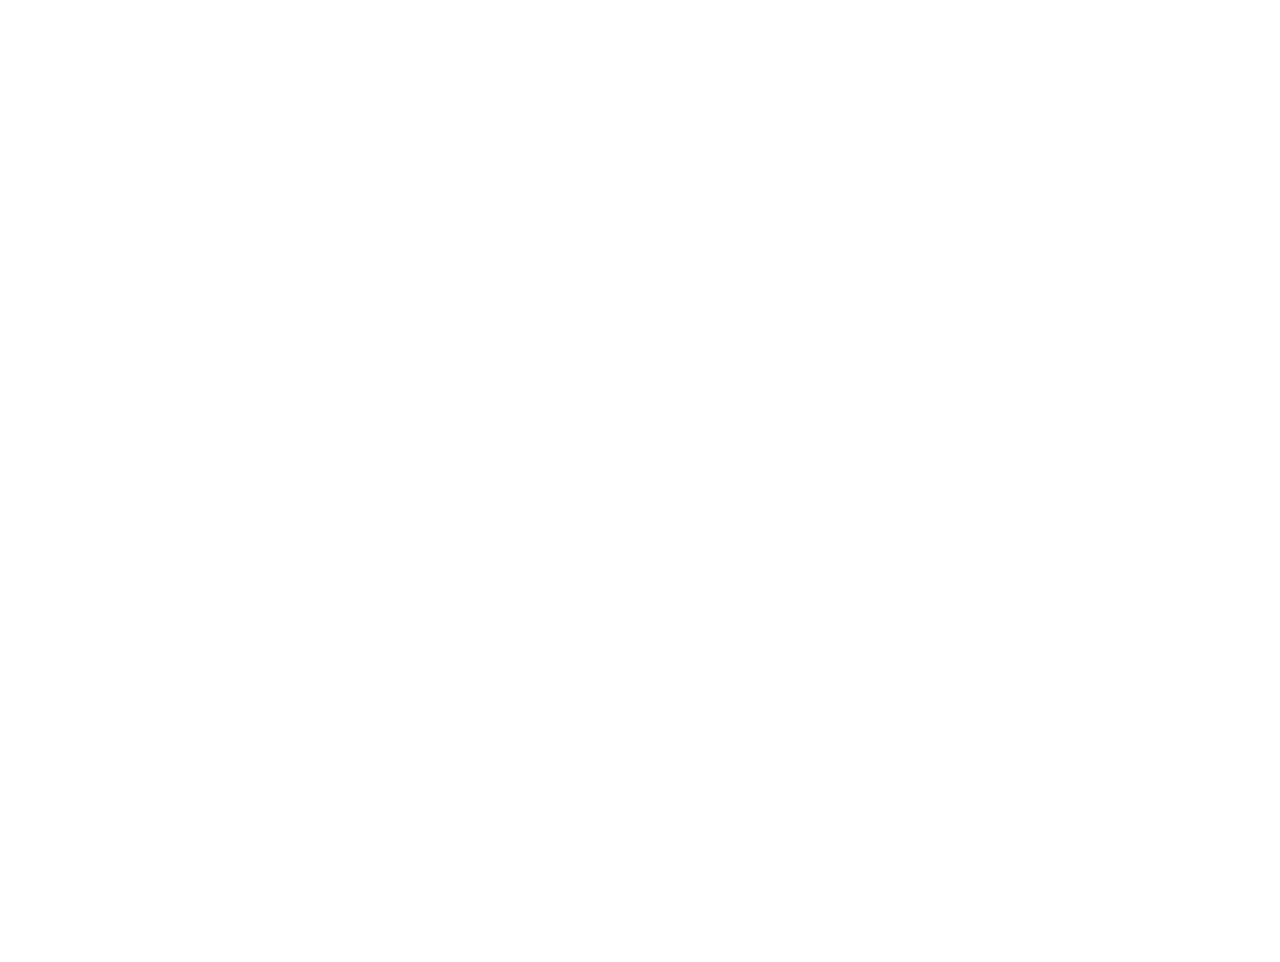 Верещагин В.В. Близ Георгиевского монастыря. Конец 1880-х -1890-е. Холст, масло. 46х61. Русский музей, Санкт-Петербург